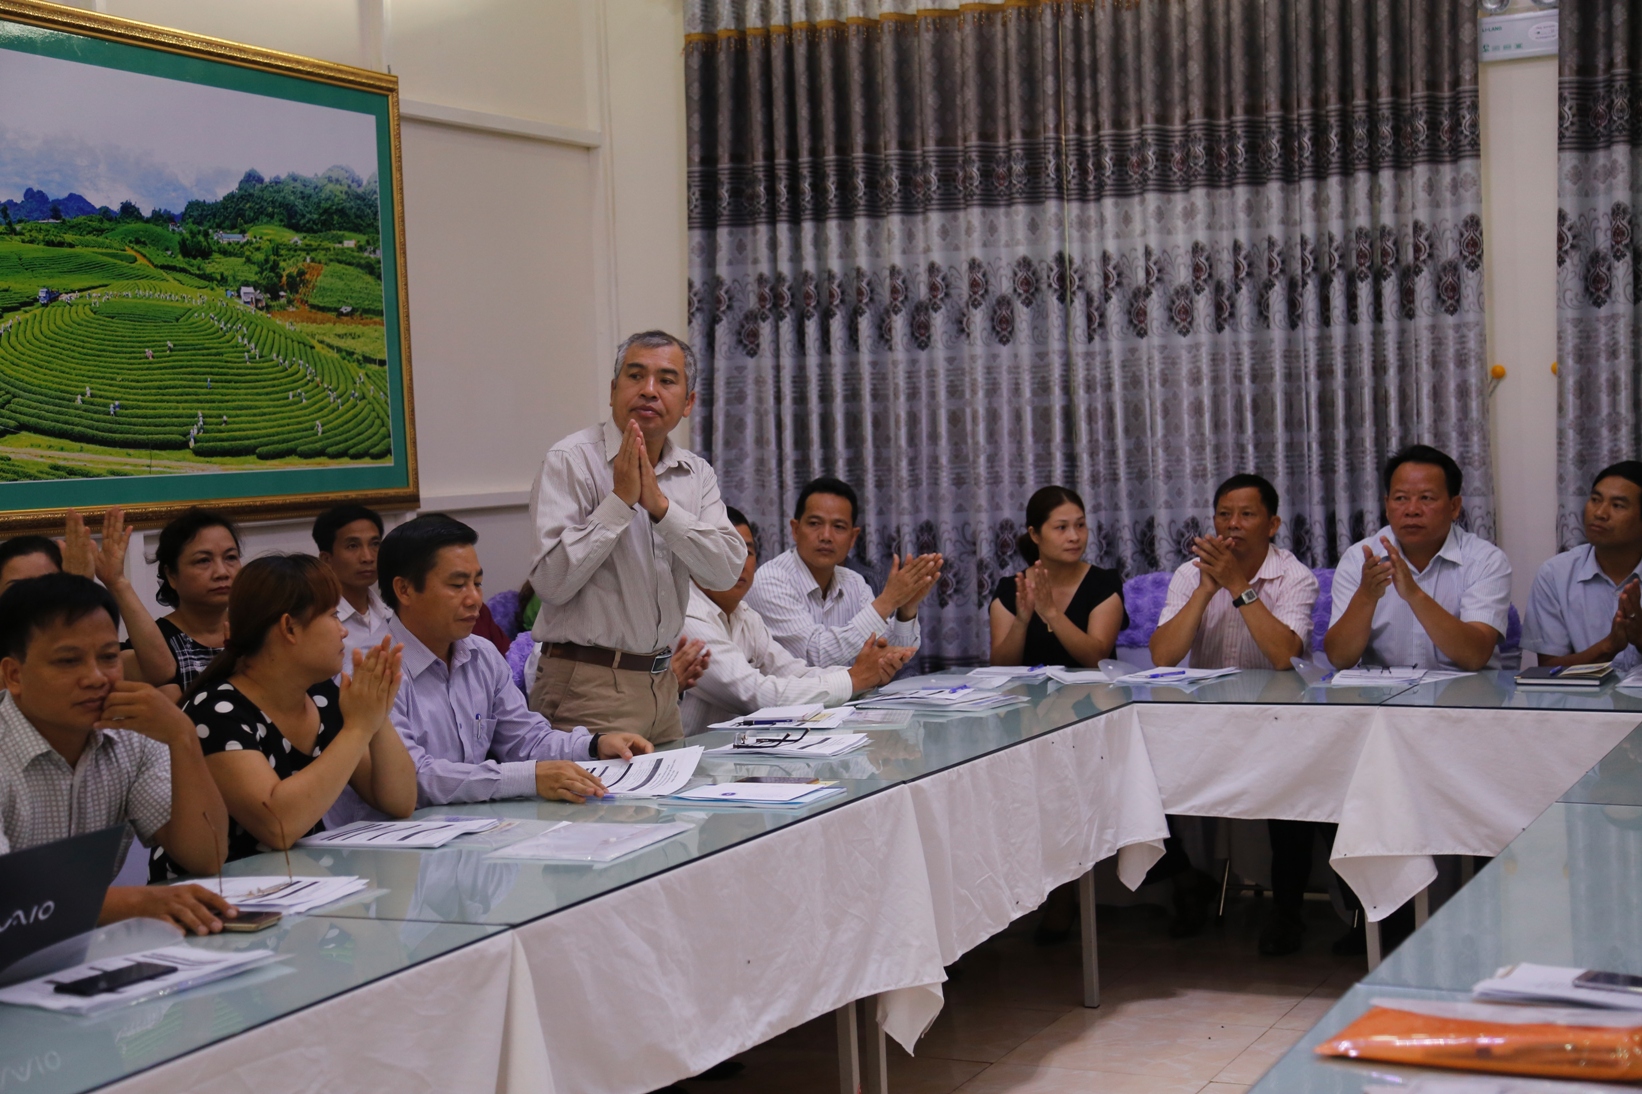 Hội thảo khởi động dự án Nâng cao hệ thống y tế và cải thiện dinh dưỡng tại tỉnh Sơn La, Việt Nam